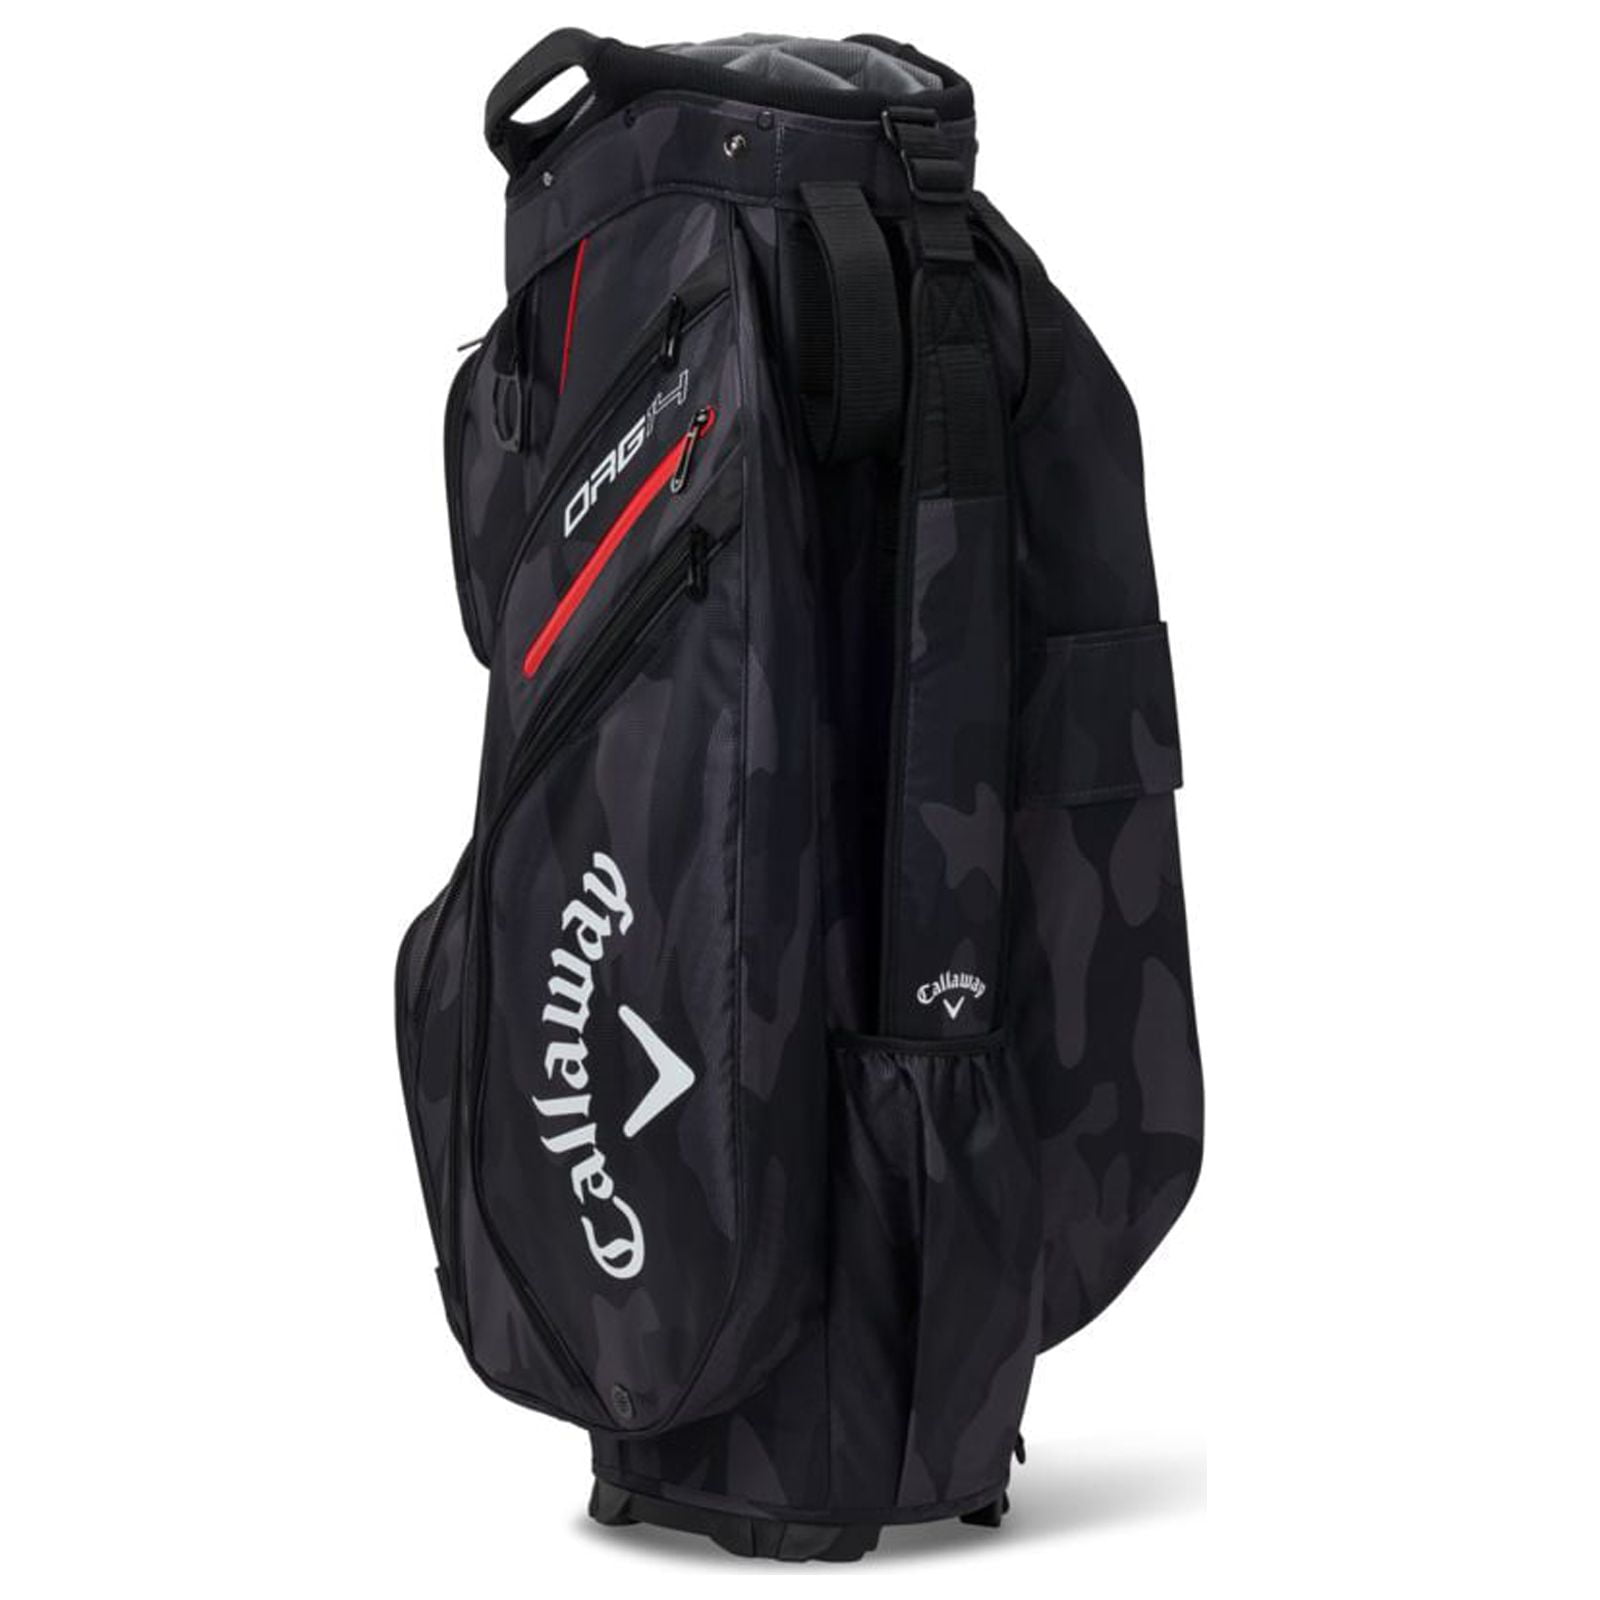 Callaway ORG 14 Golf Cart Bag Navy Red USA - Walmart.com